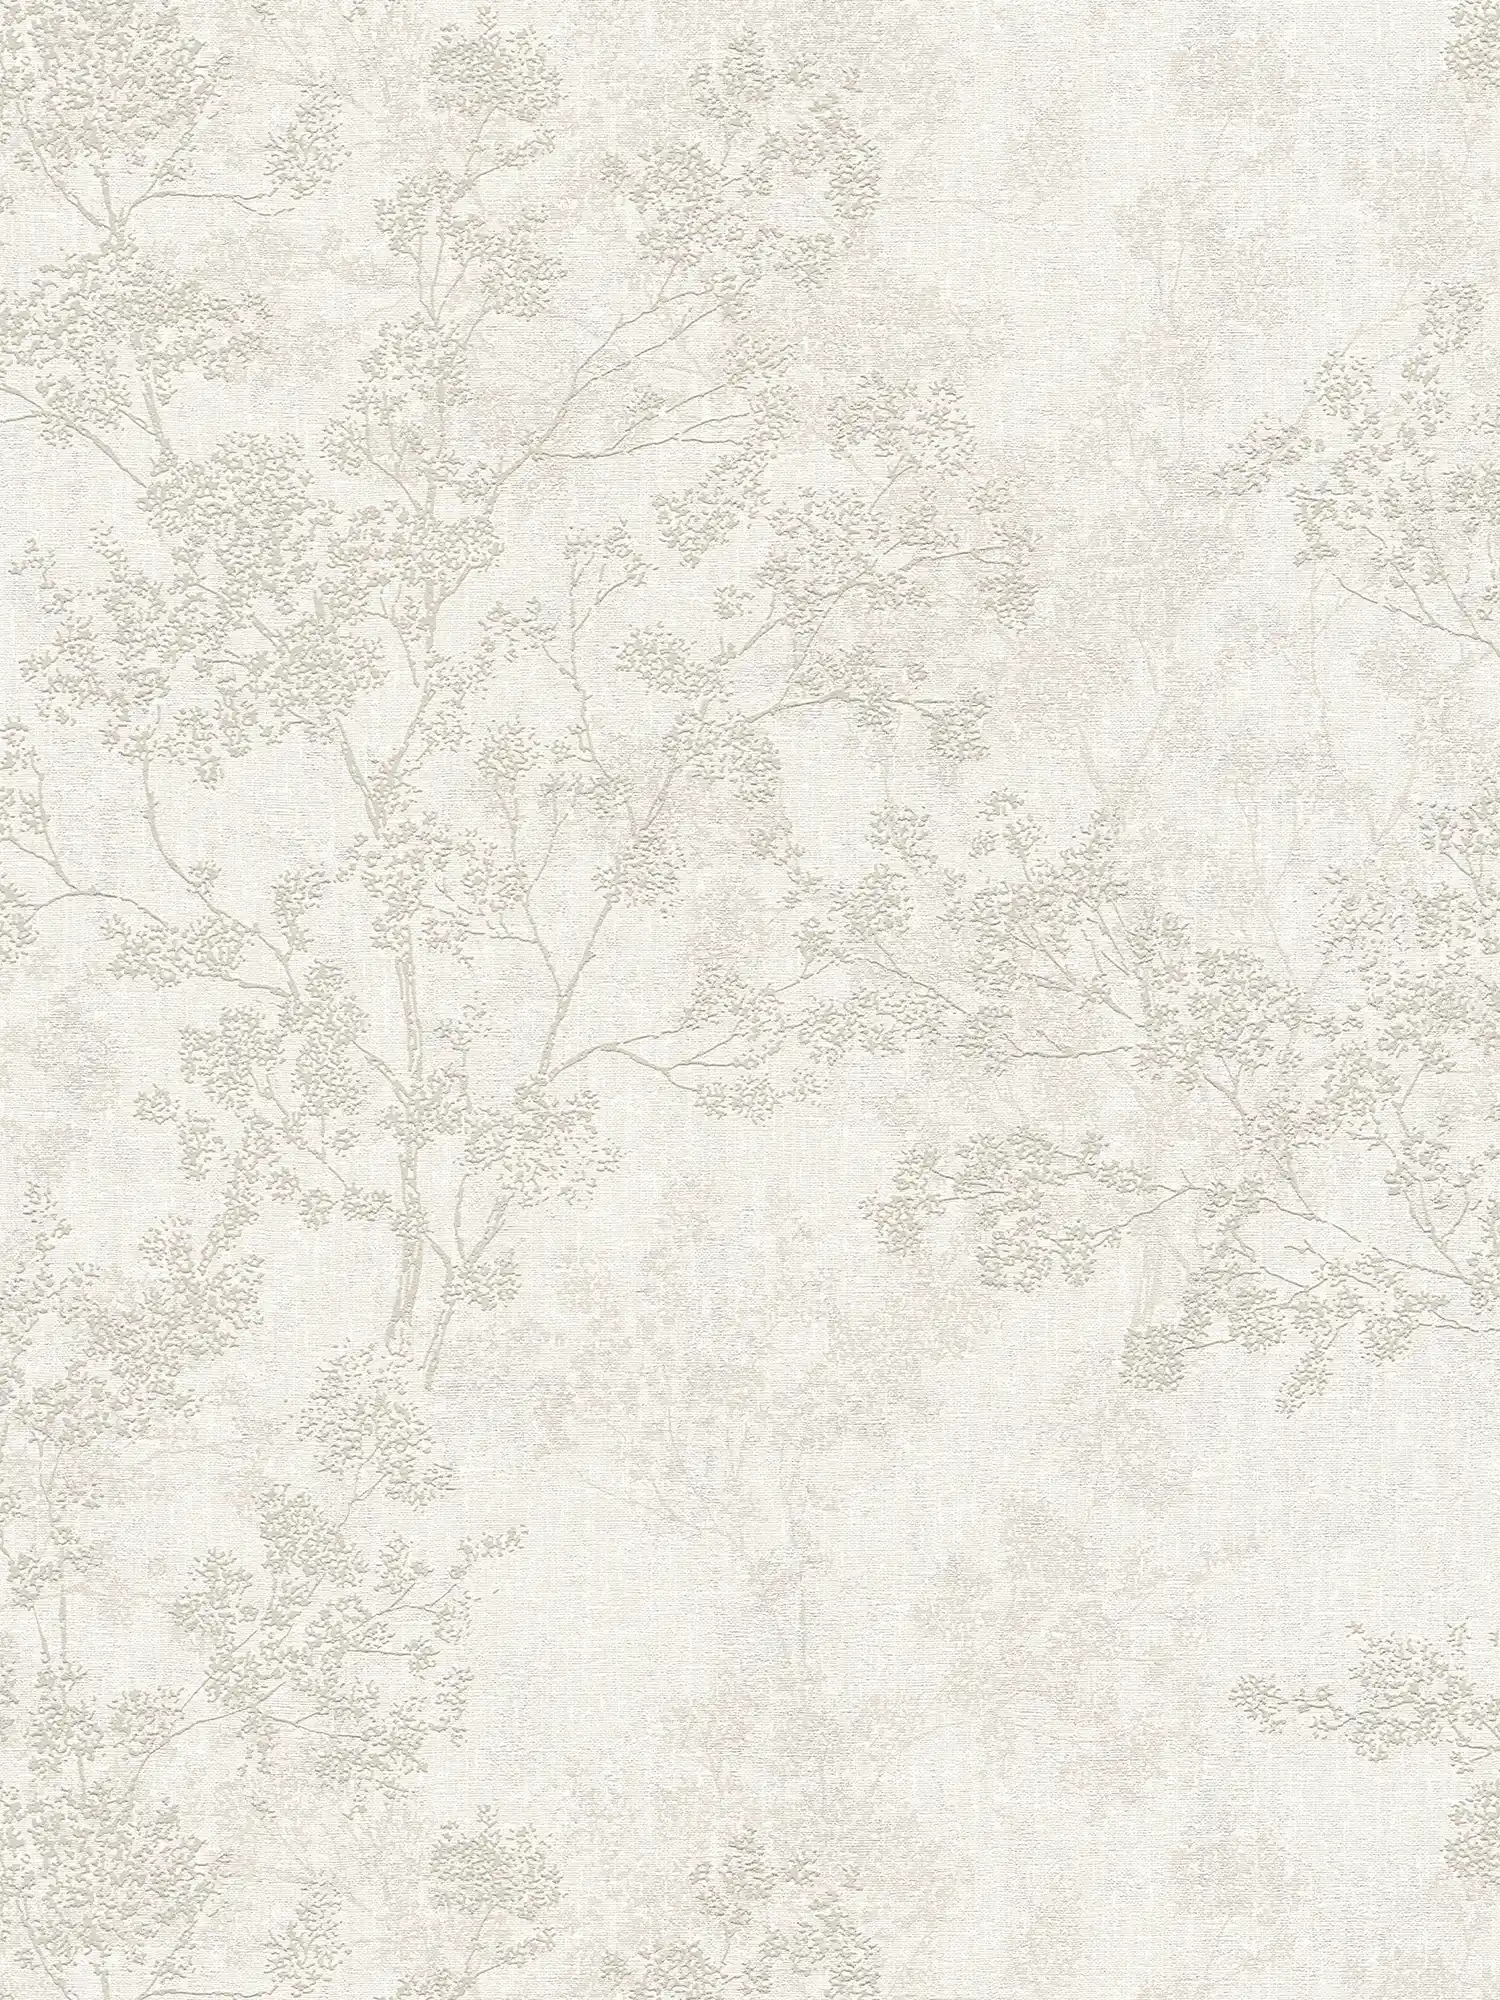 wallpaper leaves pattern in linen look - beige, cream, grey
